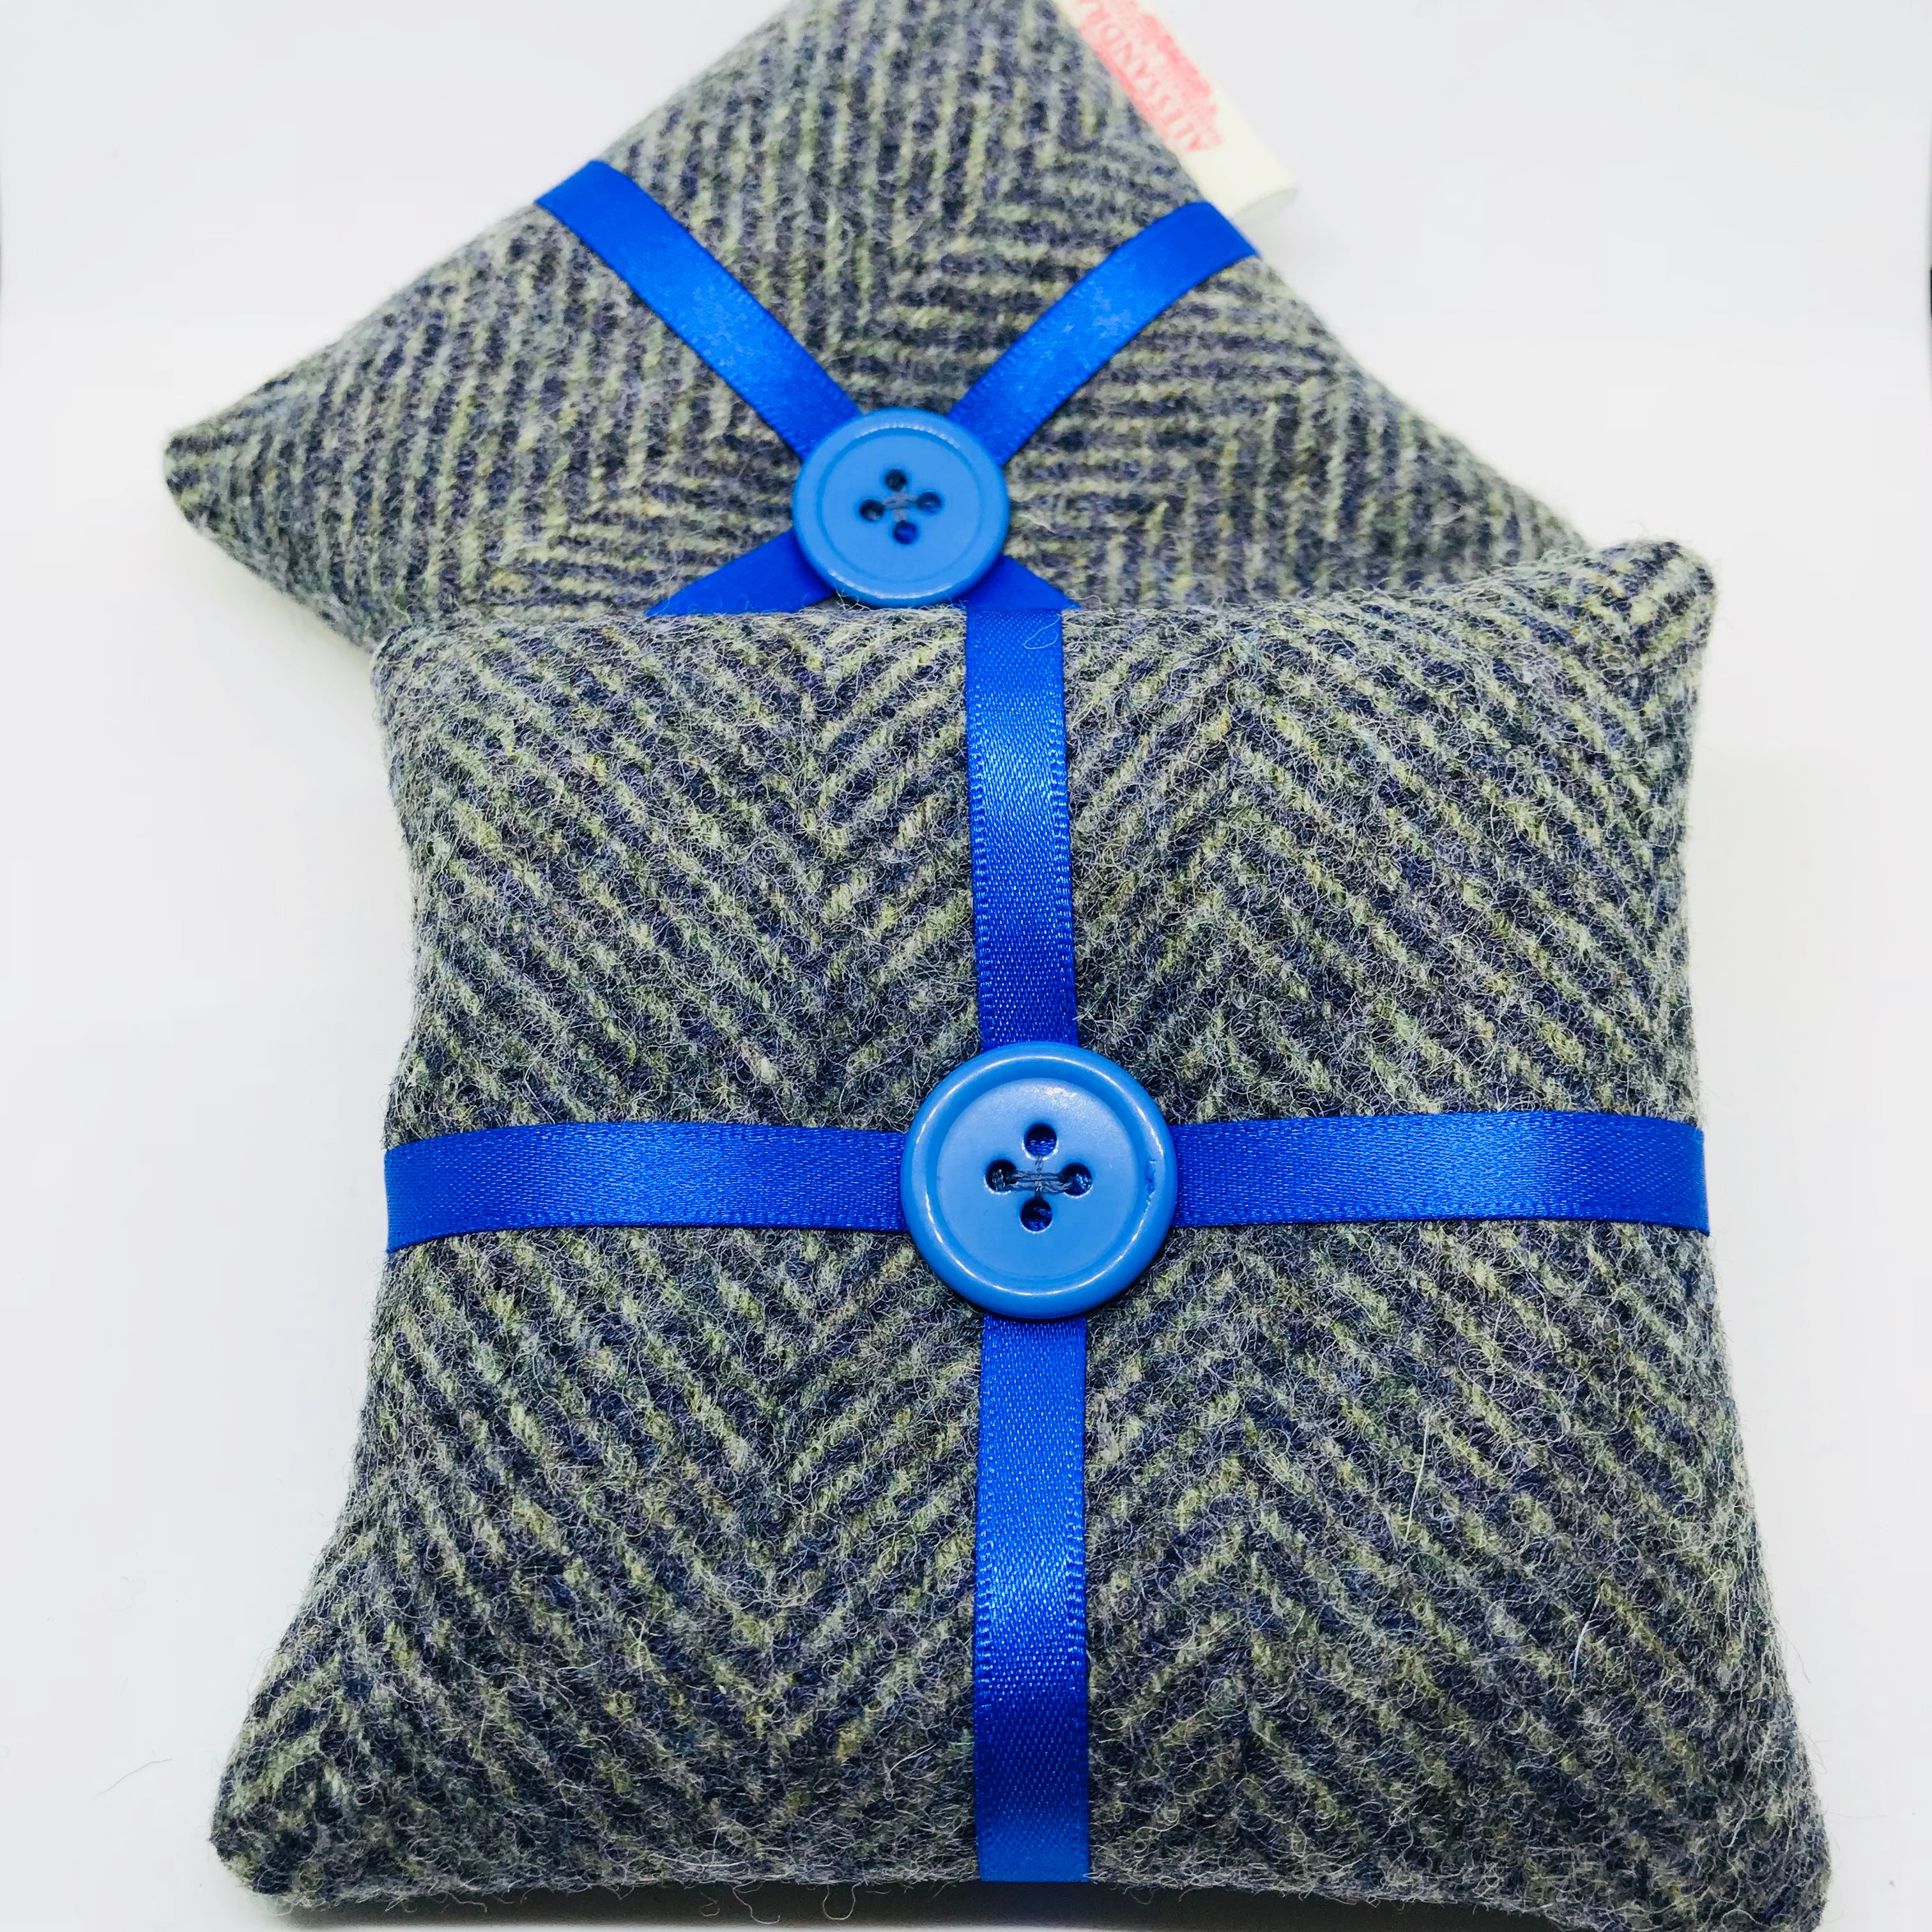 Wool Tweed Lavender Bags - Herringbone - Alessandra Handmade Creations